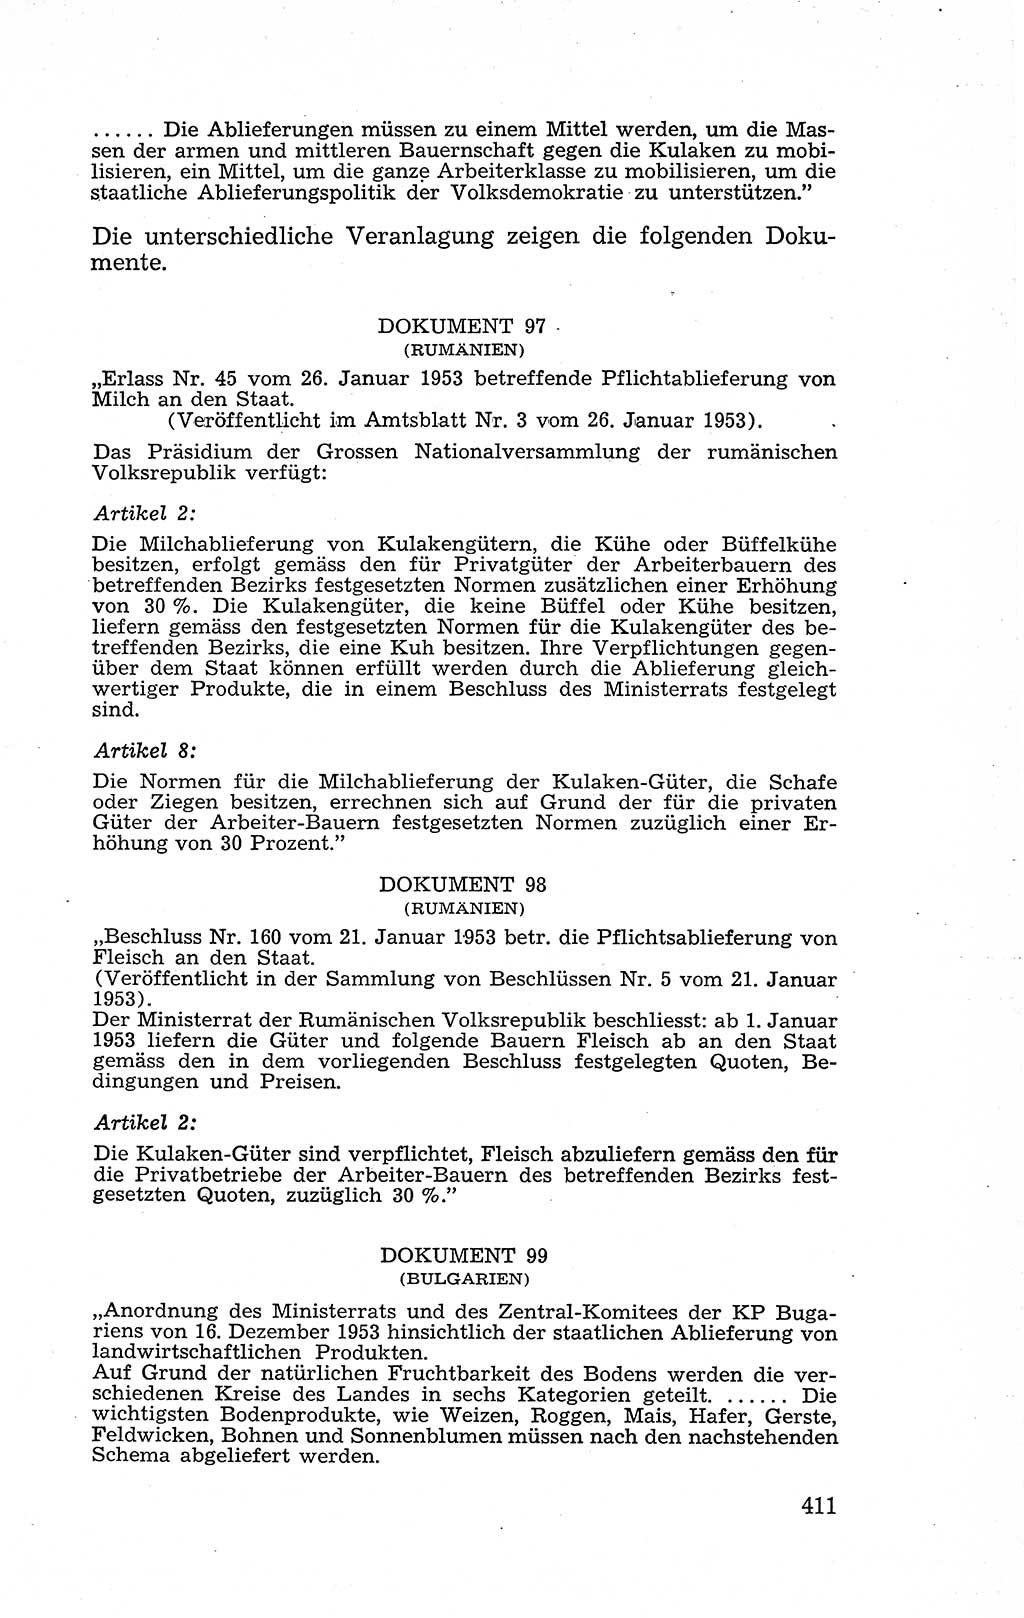 Recht in Fesseln, Dokumente, Internationale Juristen-Kommission [Bundesrepublik Deutschland (BRD)] 1955, Seite 411 (R. Dok. IJK BRD 1955, S. 411)